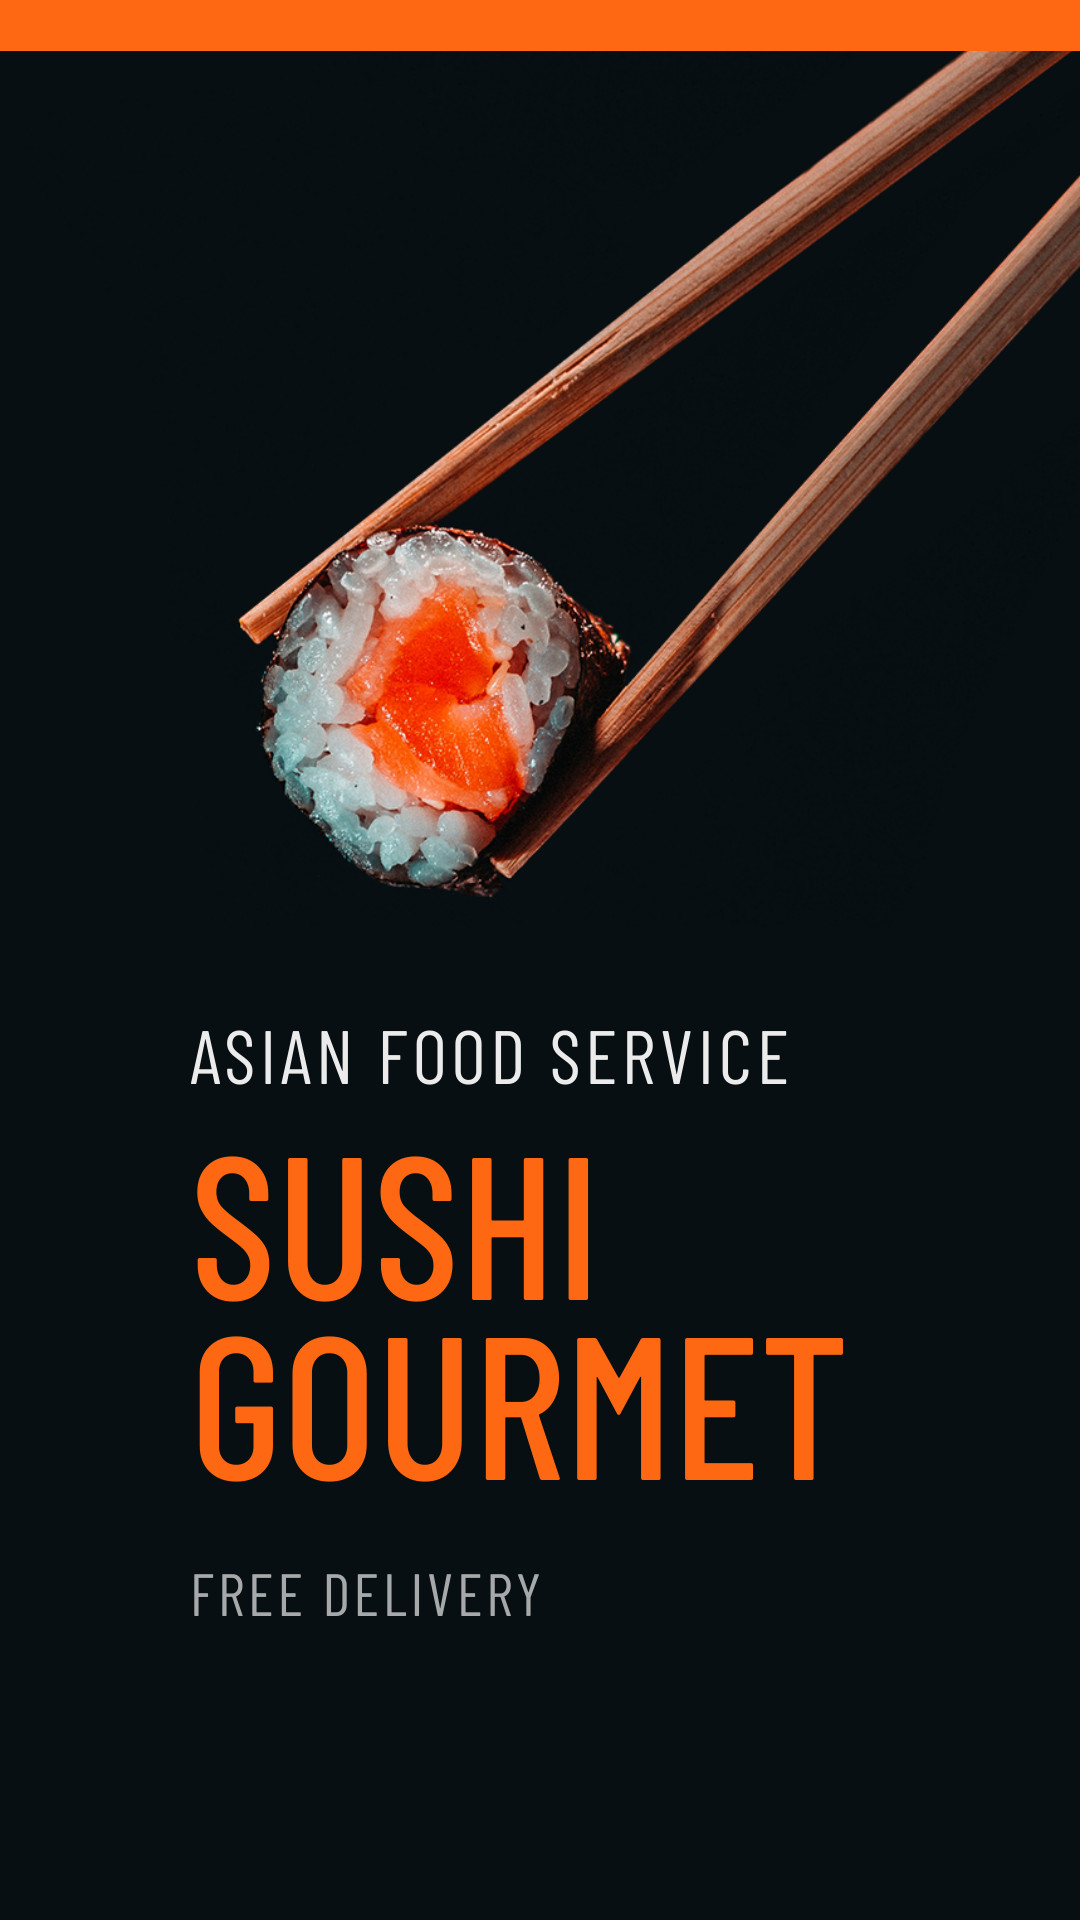 Sushi Gourmet Asian Food Service 